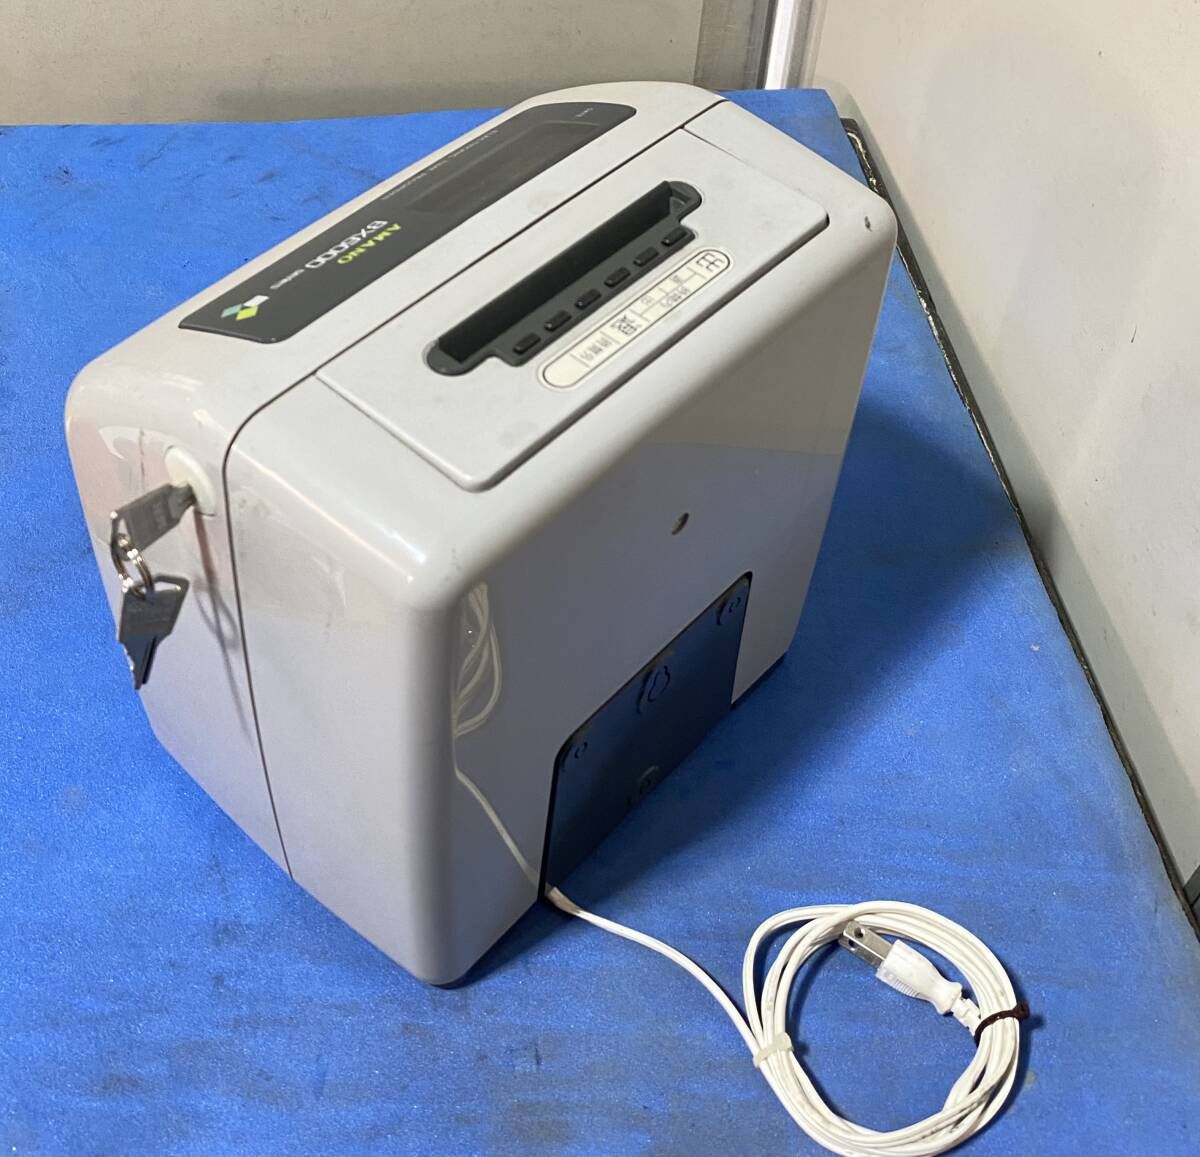 AMANO электронный регистратор времени BX6200G сделано в Японии 100V